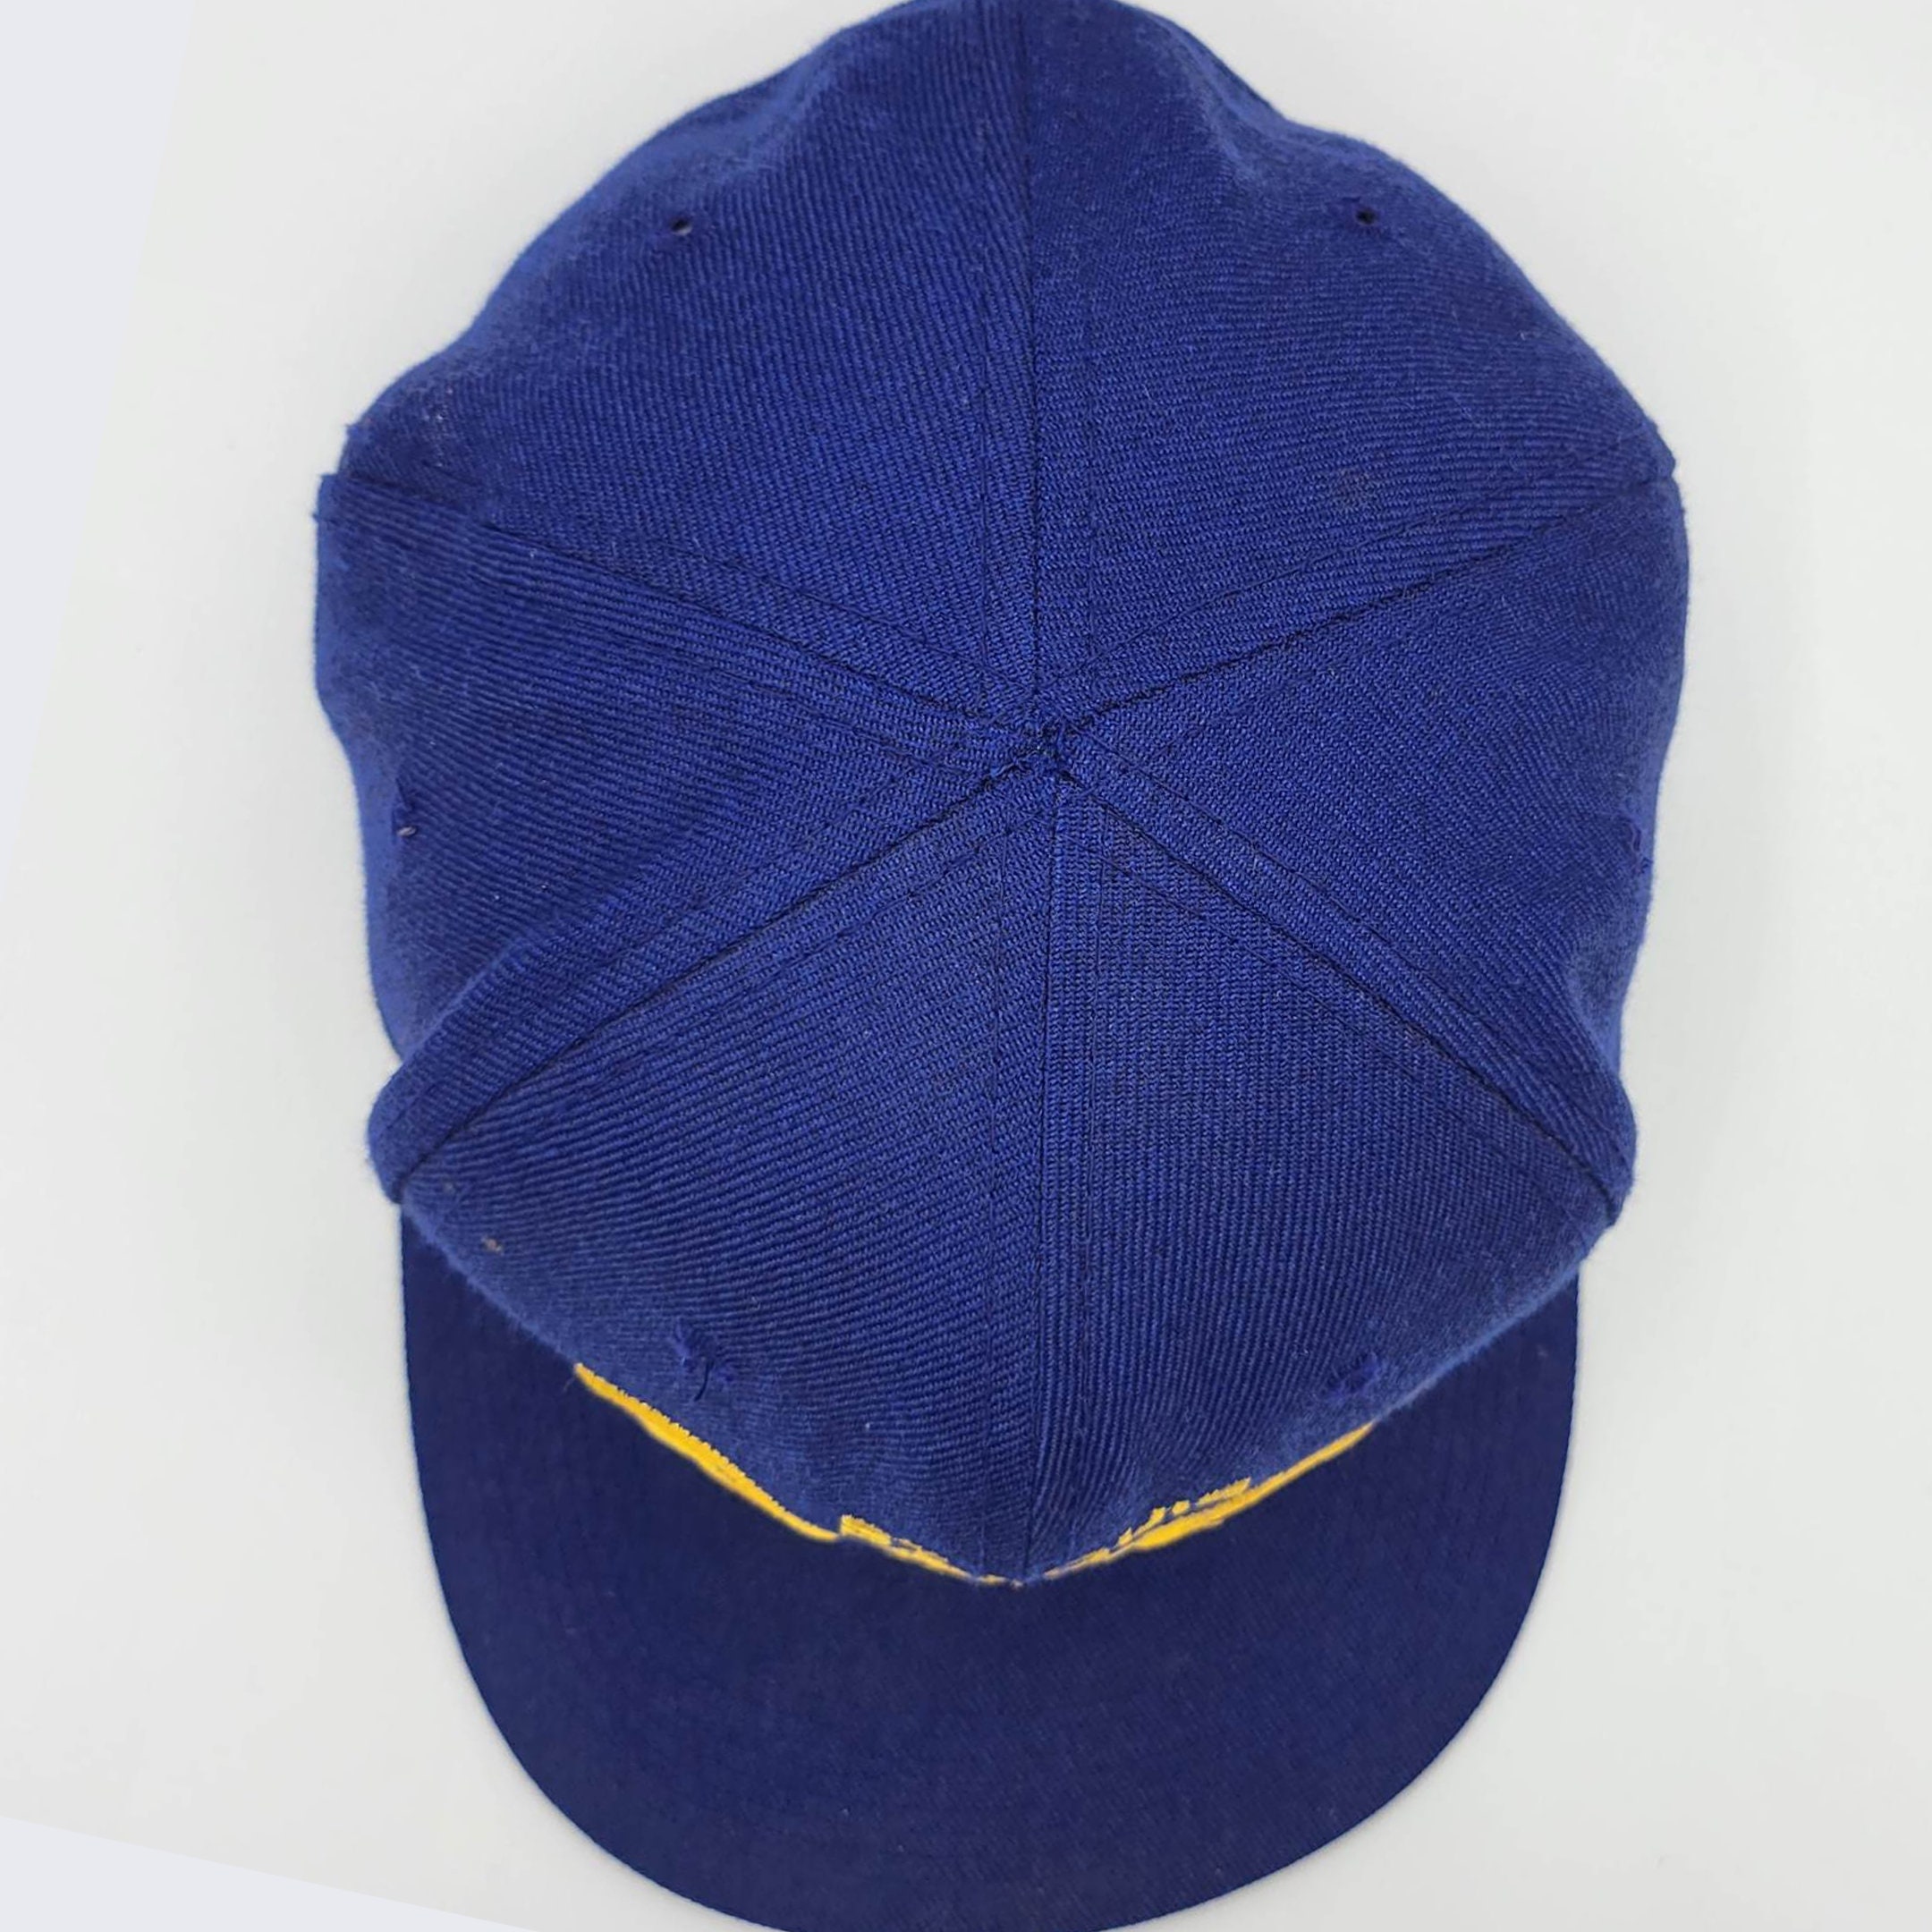  St. Louis Blues Solid Blue Vintage Deadstock Snapback Hat/Cap  : Sports Fan Baseball Caps : Sports & Outdoors